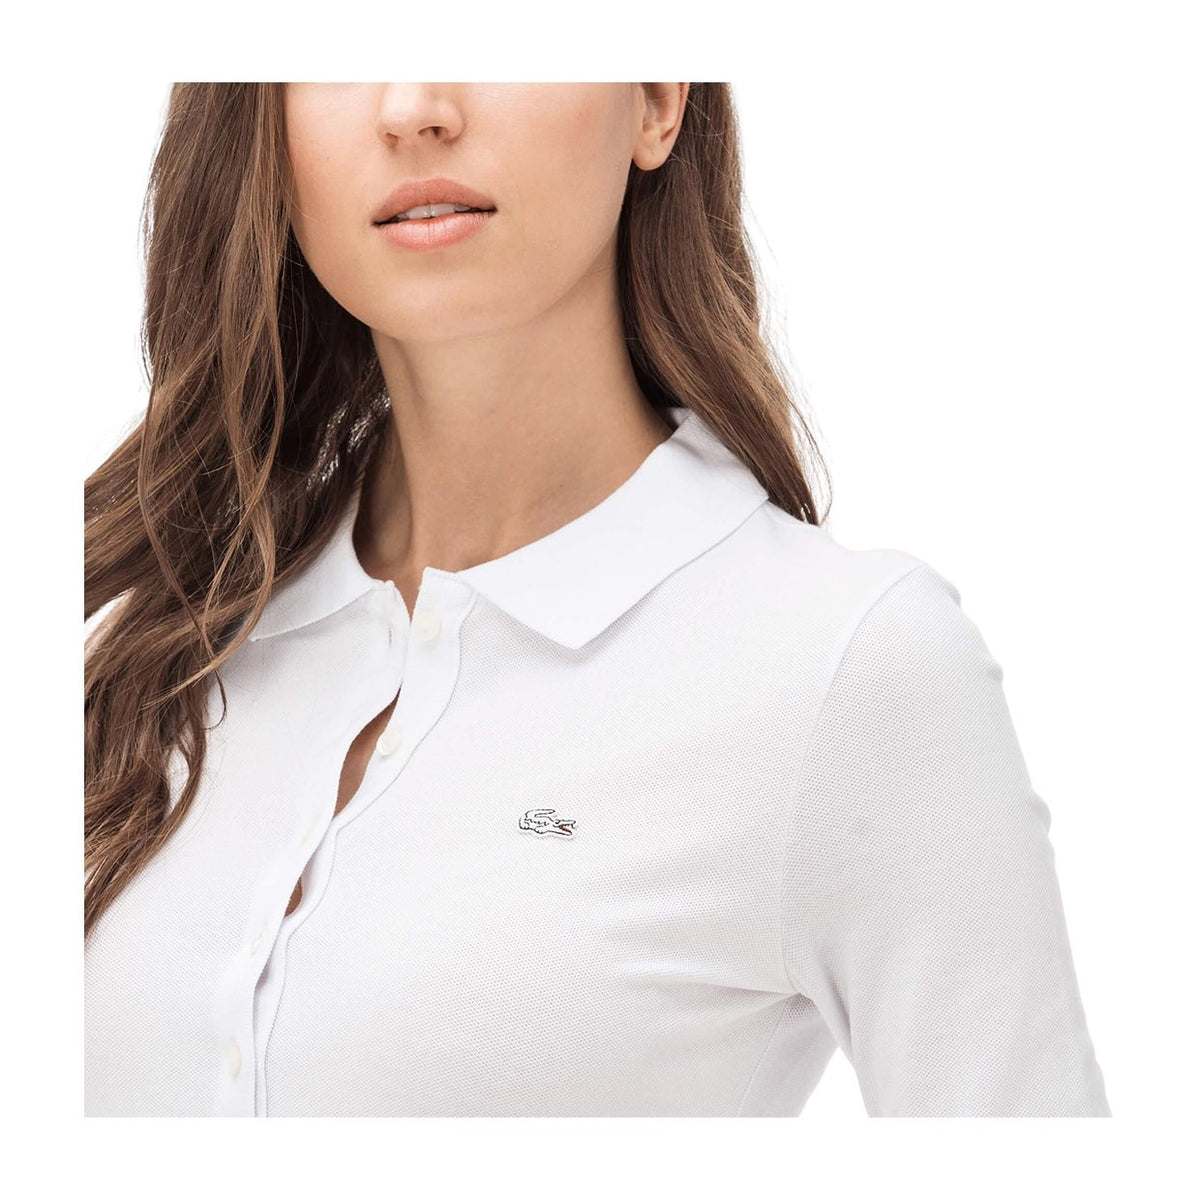 Lav et navn Bane handle Lacoste Women's Polo Long Sleeves Slim Fit White on Brubaker Store